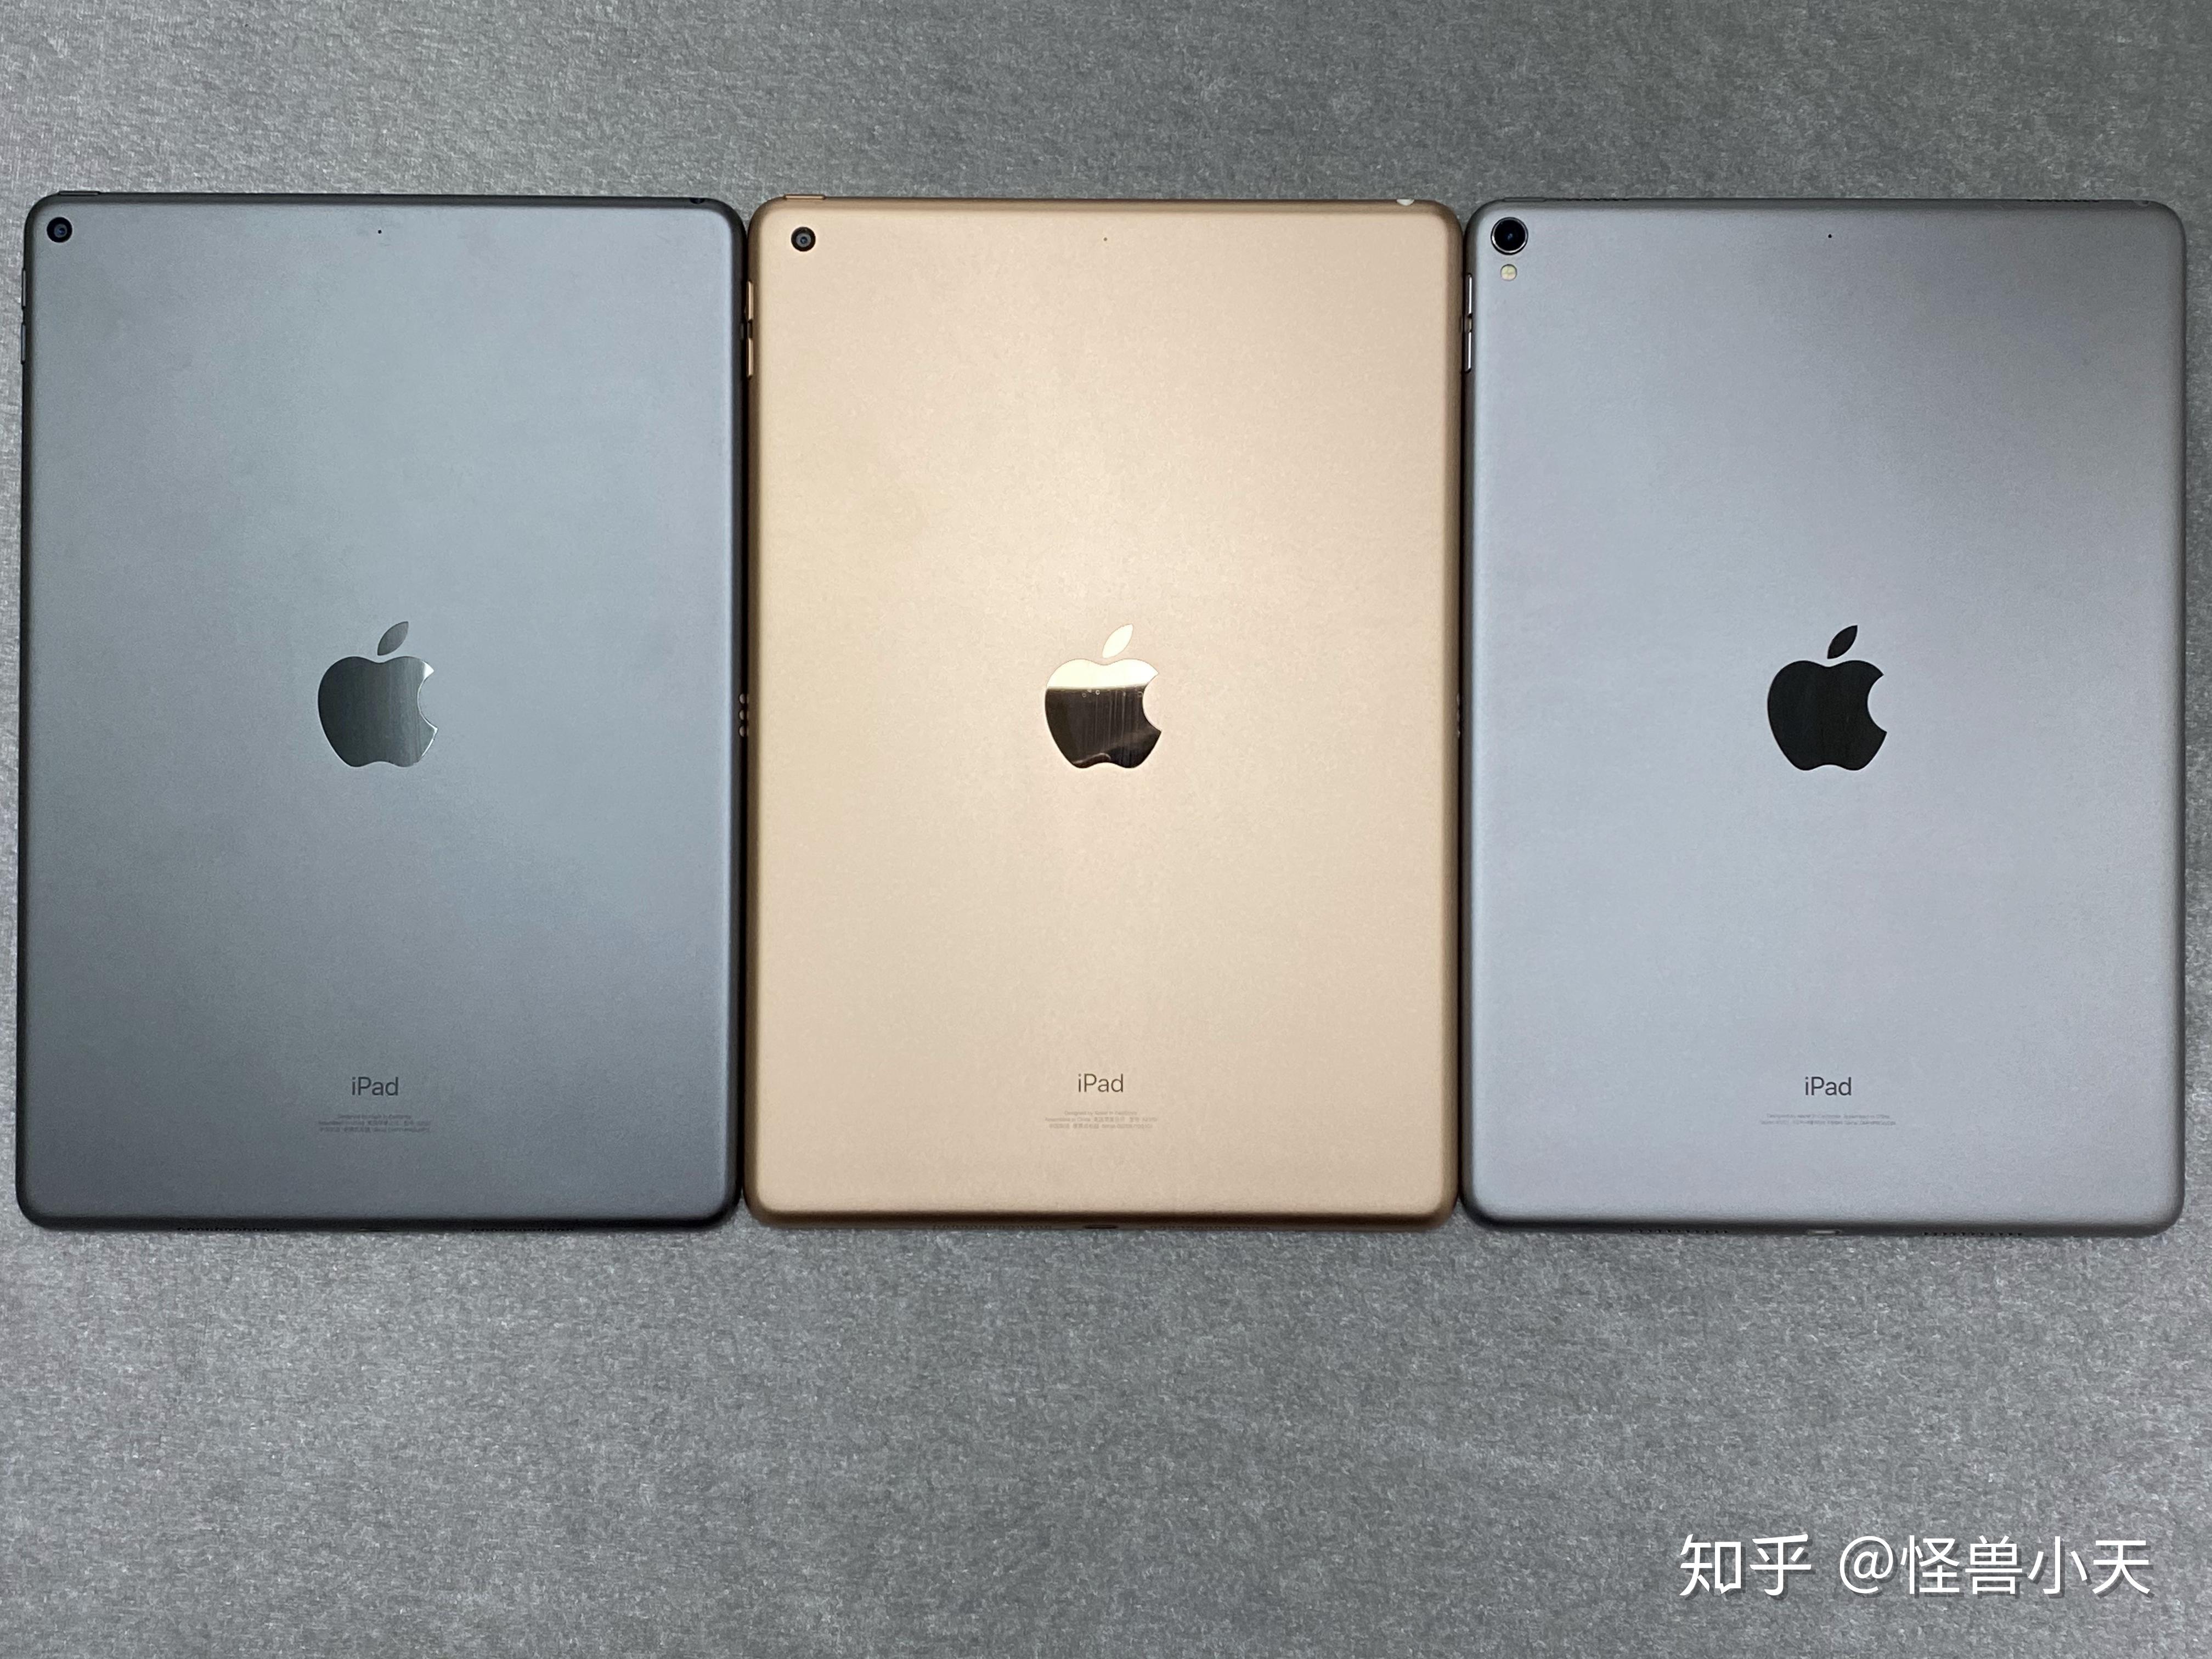 Apple iPad (2018) – iOS WiFi 128GB 9.7inch Space Grey price in Oman | Sale on Apple iPad (2018 ...